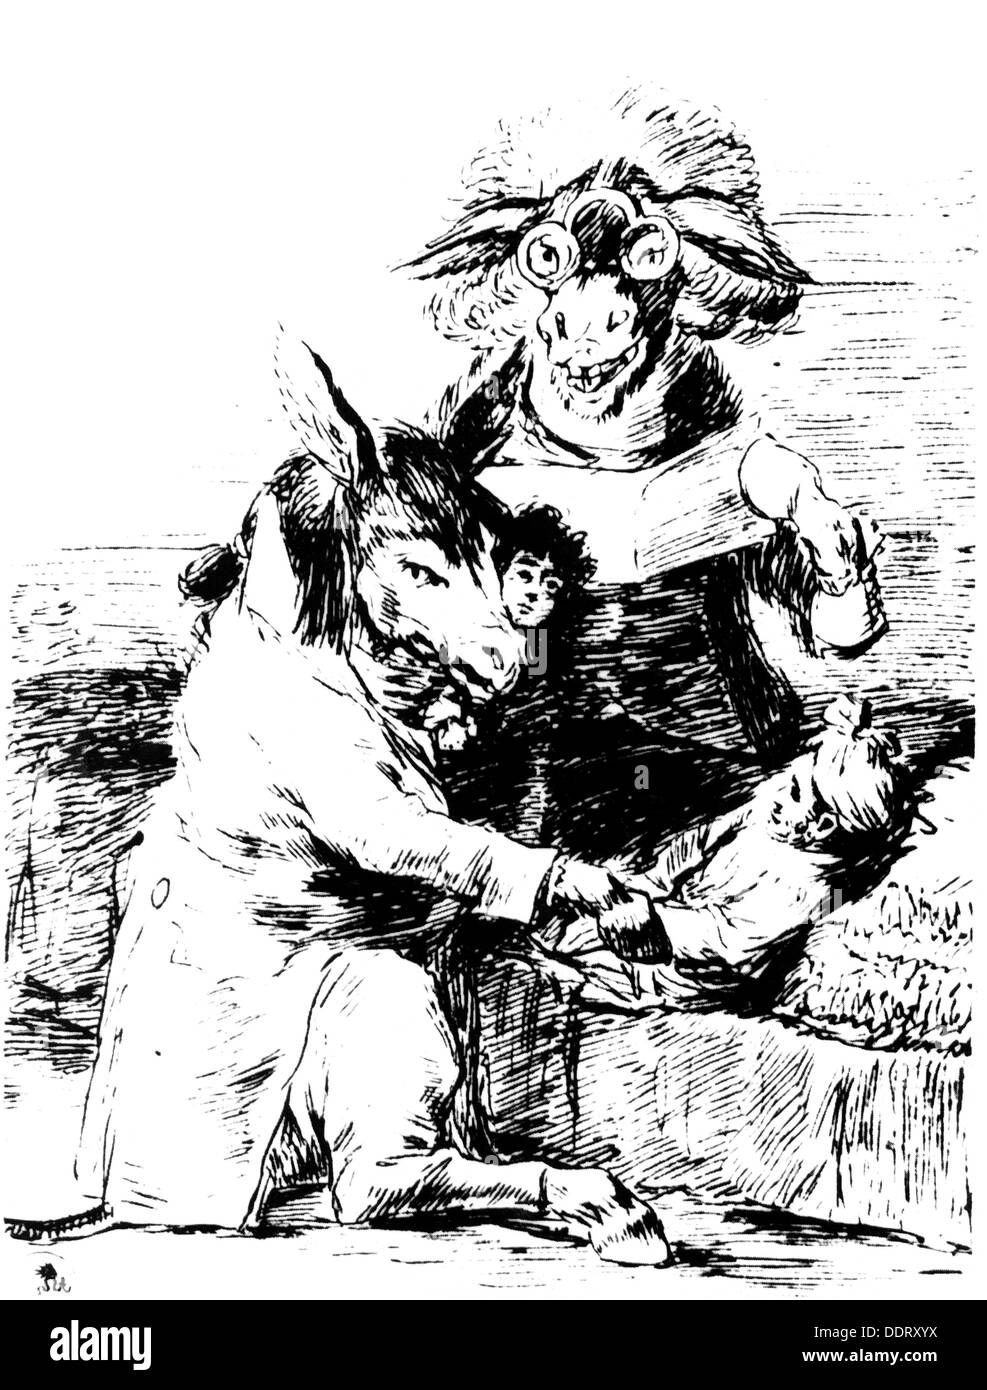 Médecine, médecins, ânes comme médecins, par Francisco de Goya y Lucientes (1746 - 1828), gravure, vers 1800, droits additionnels-Clearences-non disponible Banque D'Images